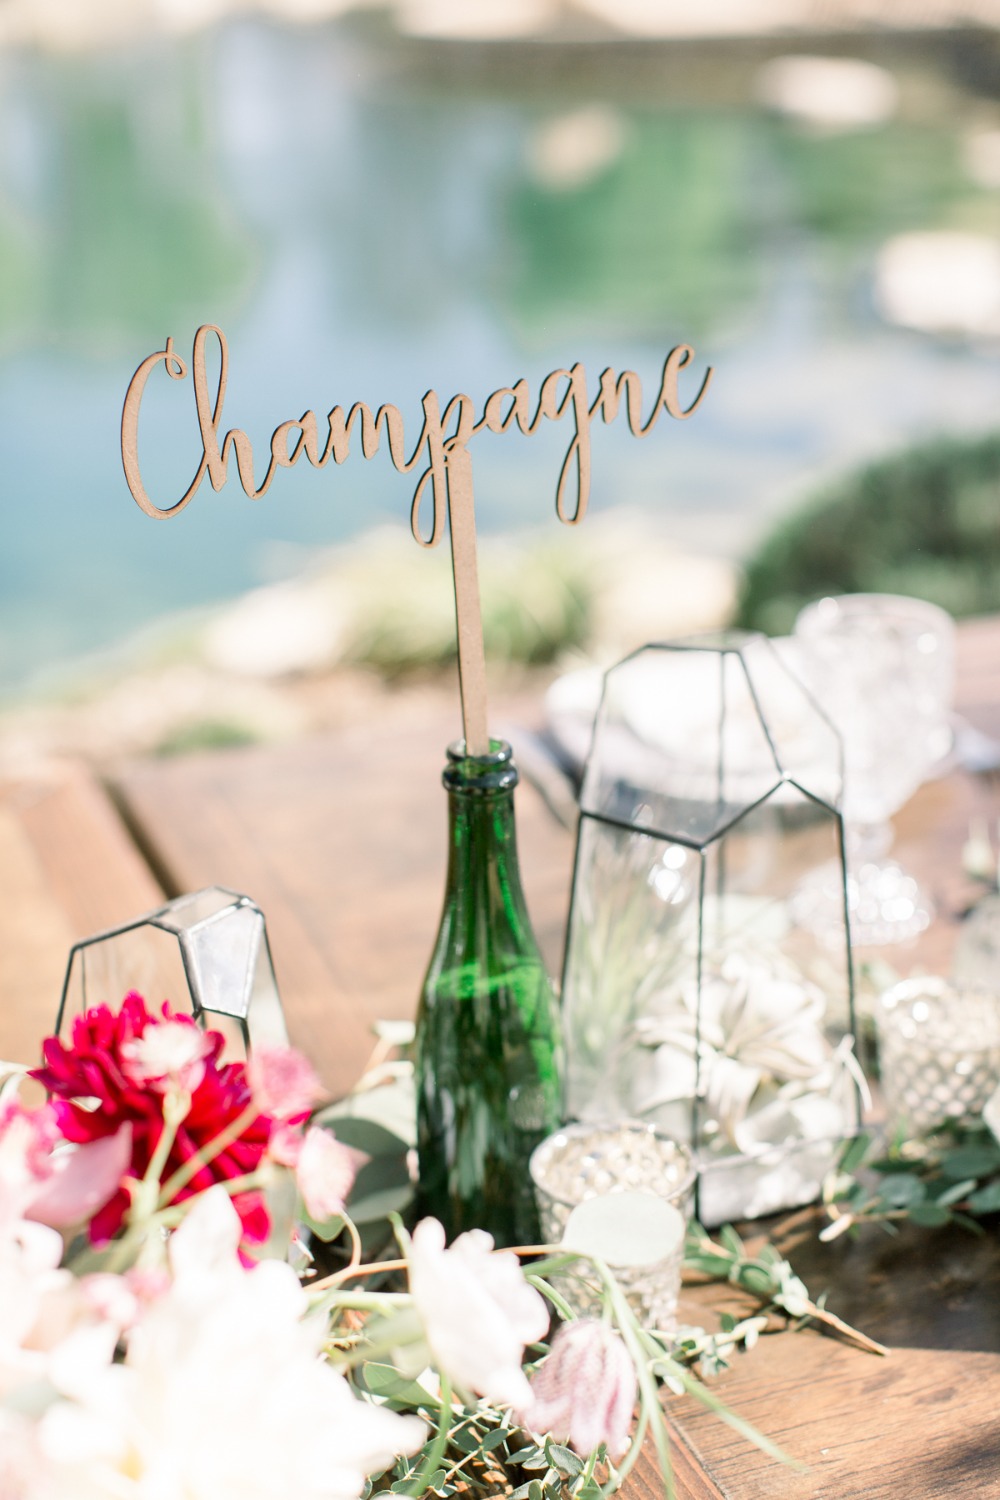 Table name idea for a boozy wedding